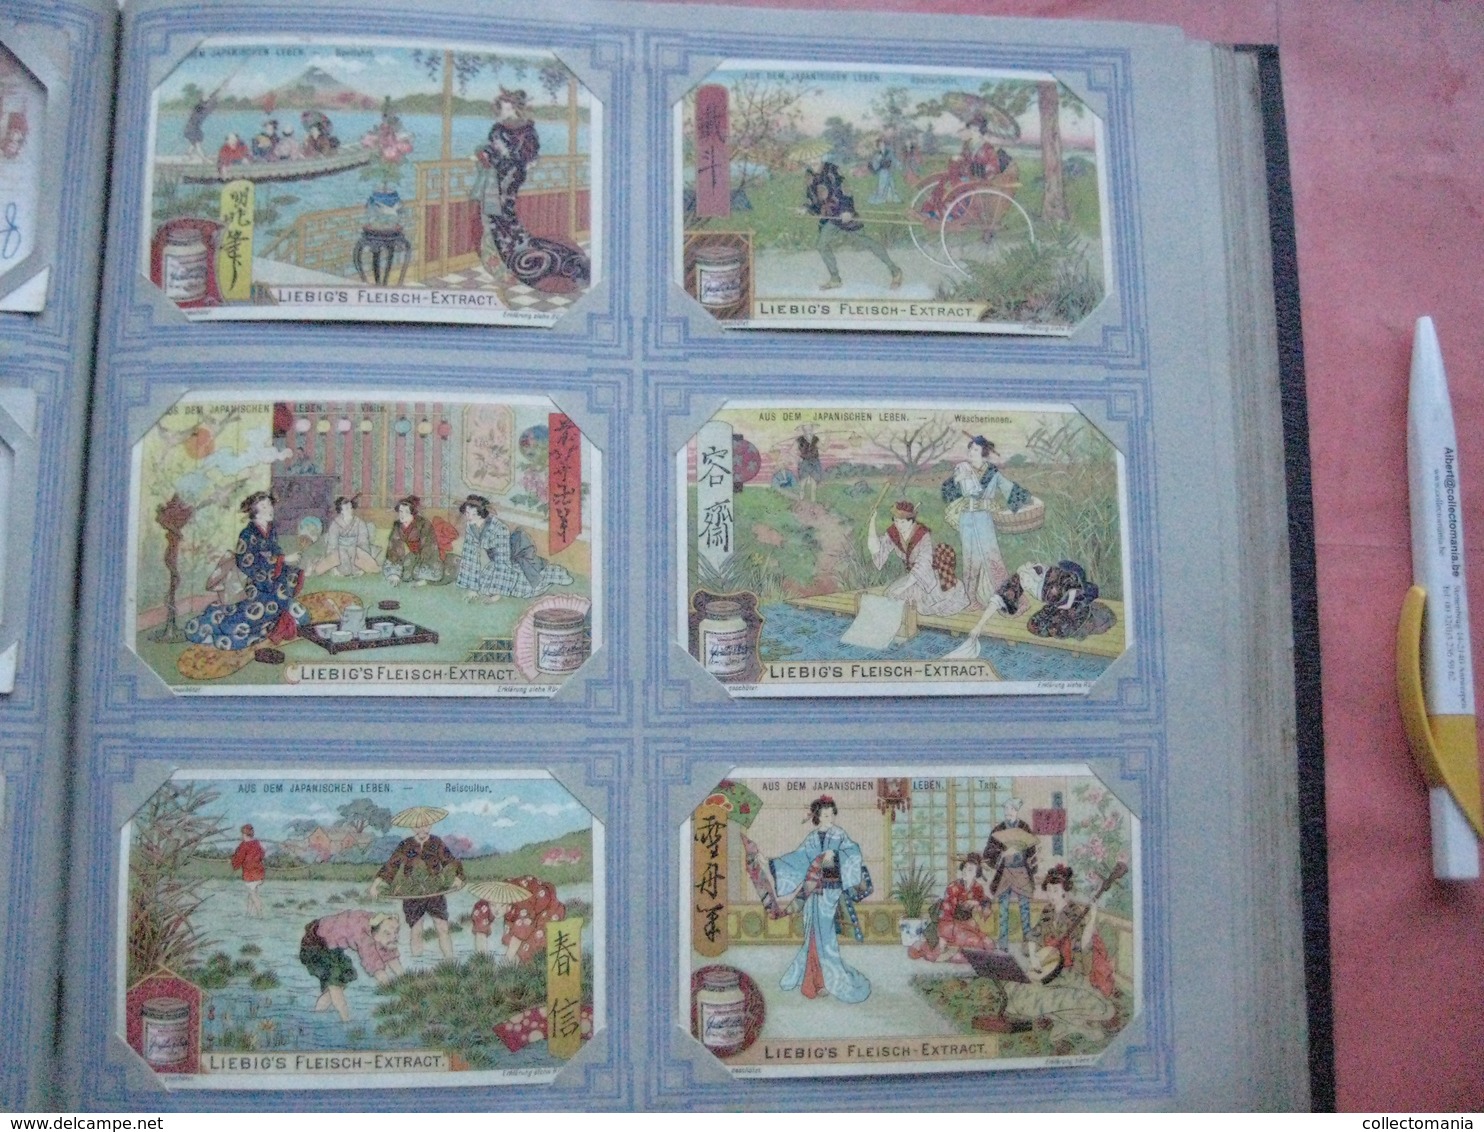 mooi Liebig Album anno 1901 à 1905, het zijn  50 complete reeksen van elke 6 kaarten 7cmX11cm, allemaal zeer goede staat